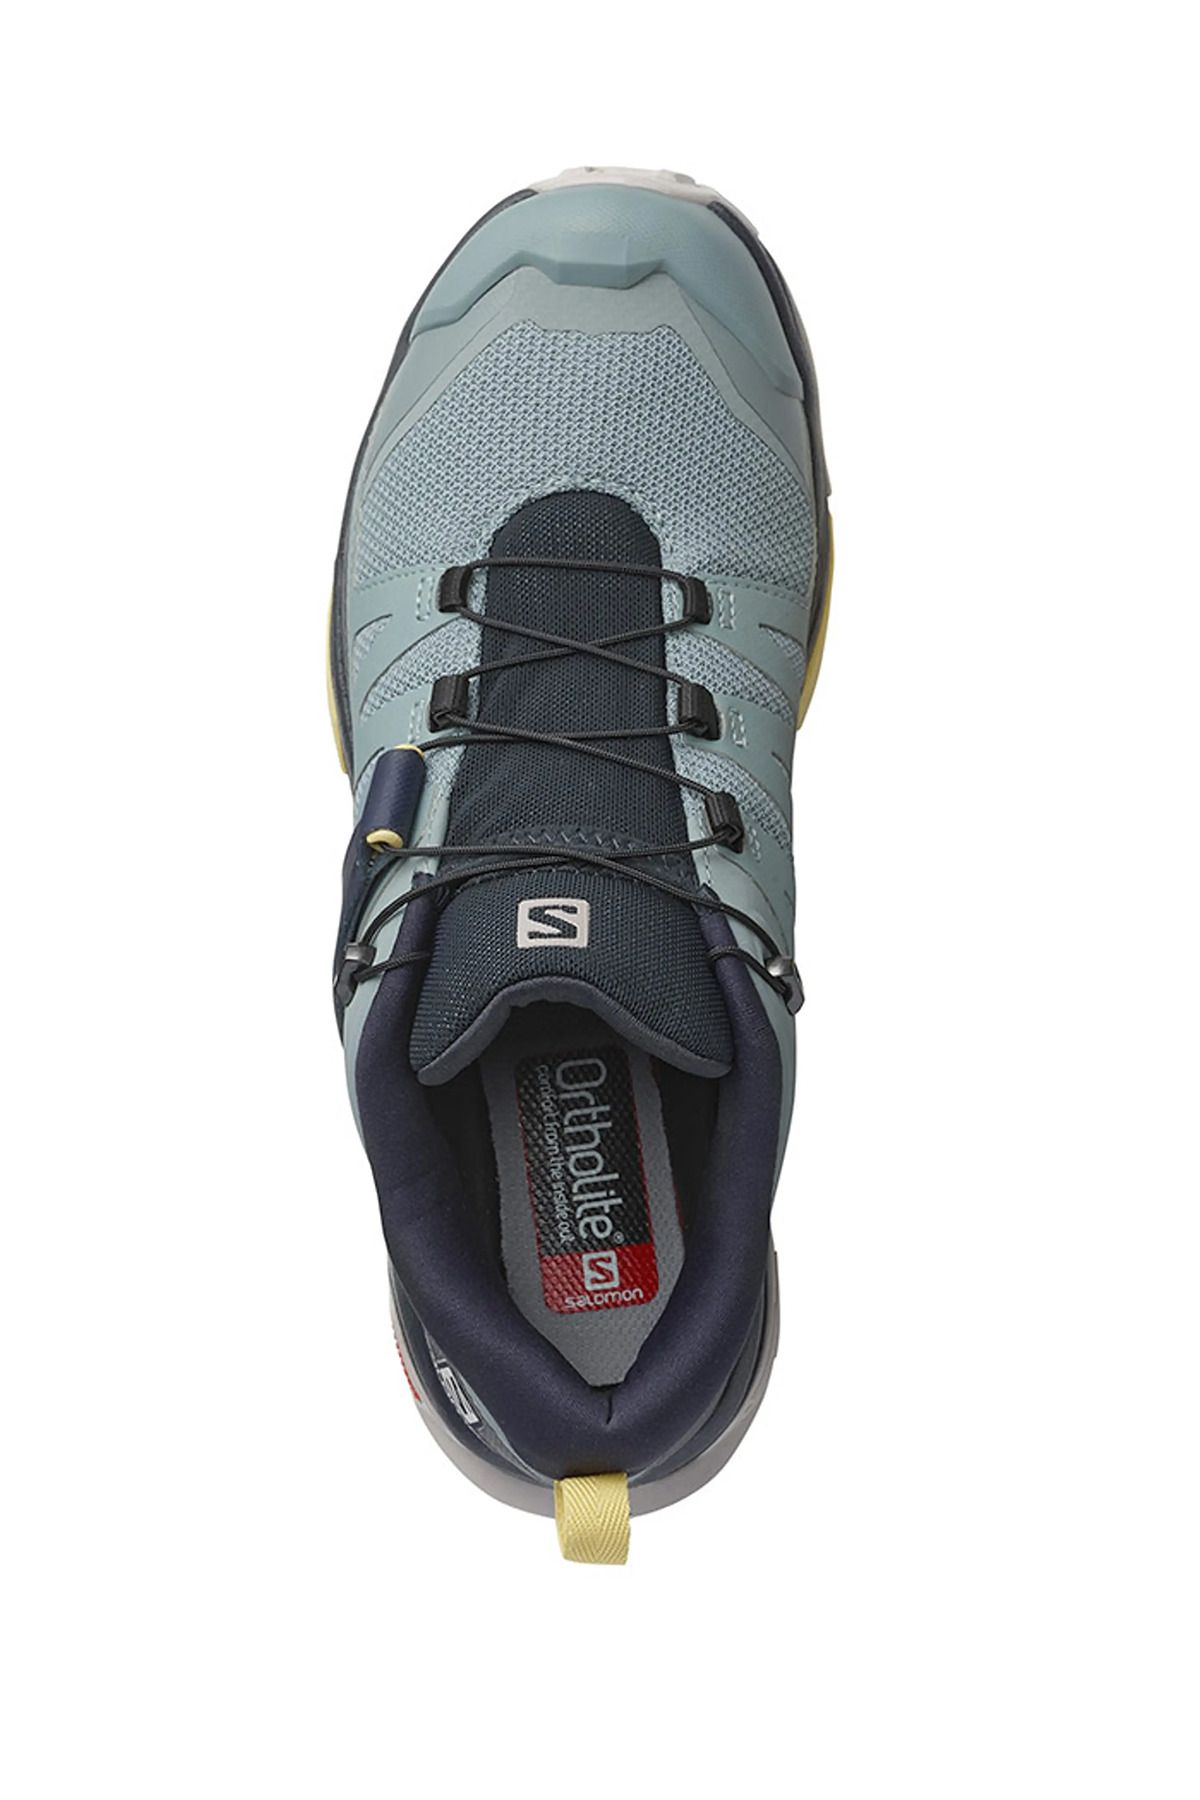 Salomon X Ultra 4 W Kadın Gri Outdoor Ayakkabı L41622800